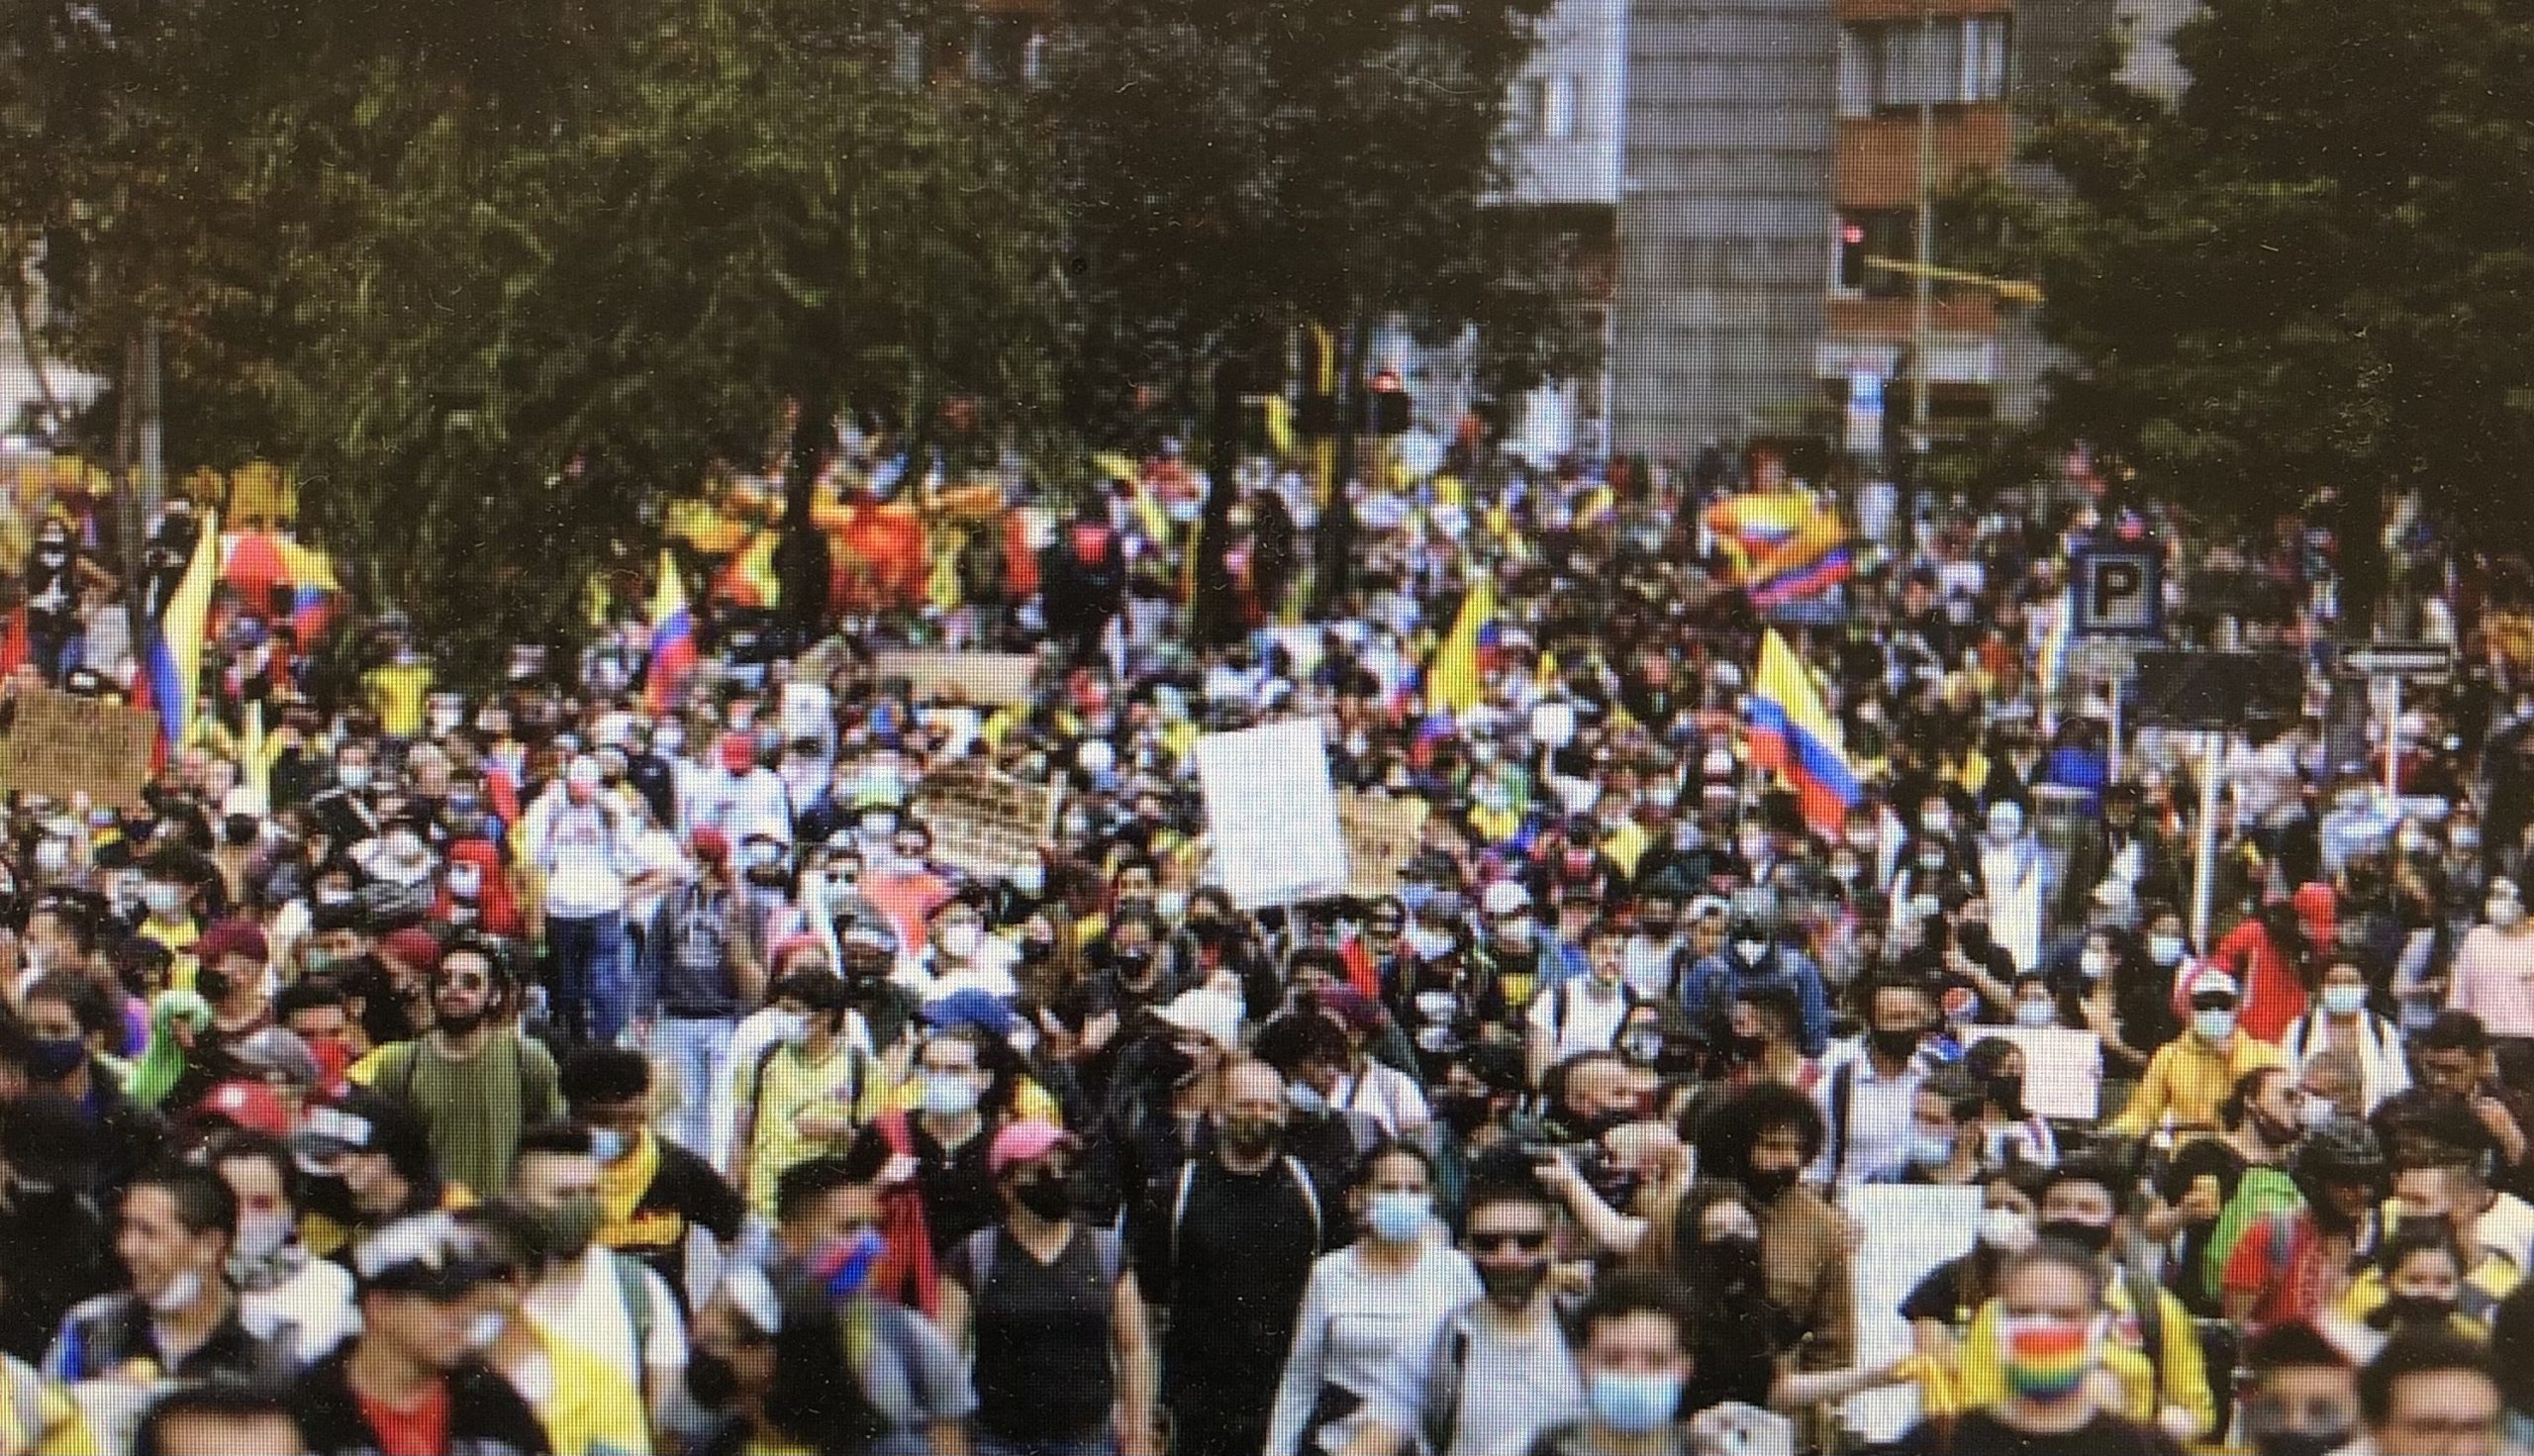 colombia - manifestazione